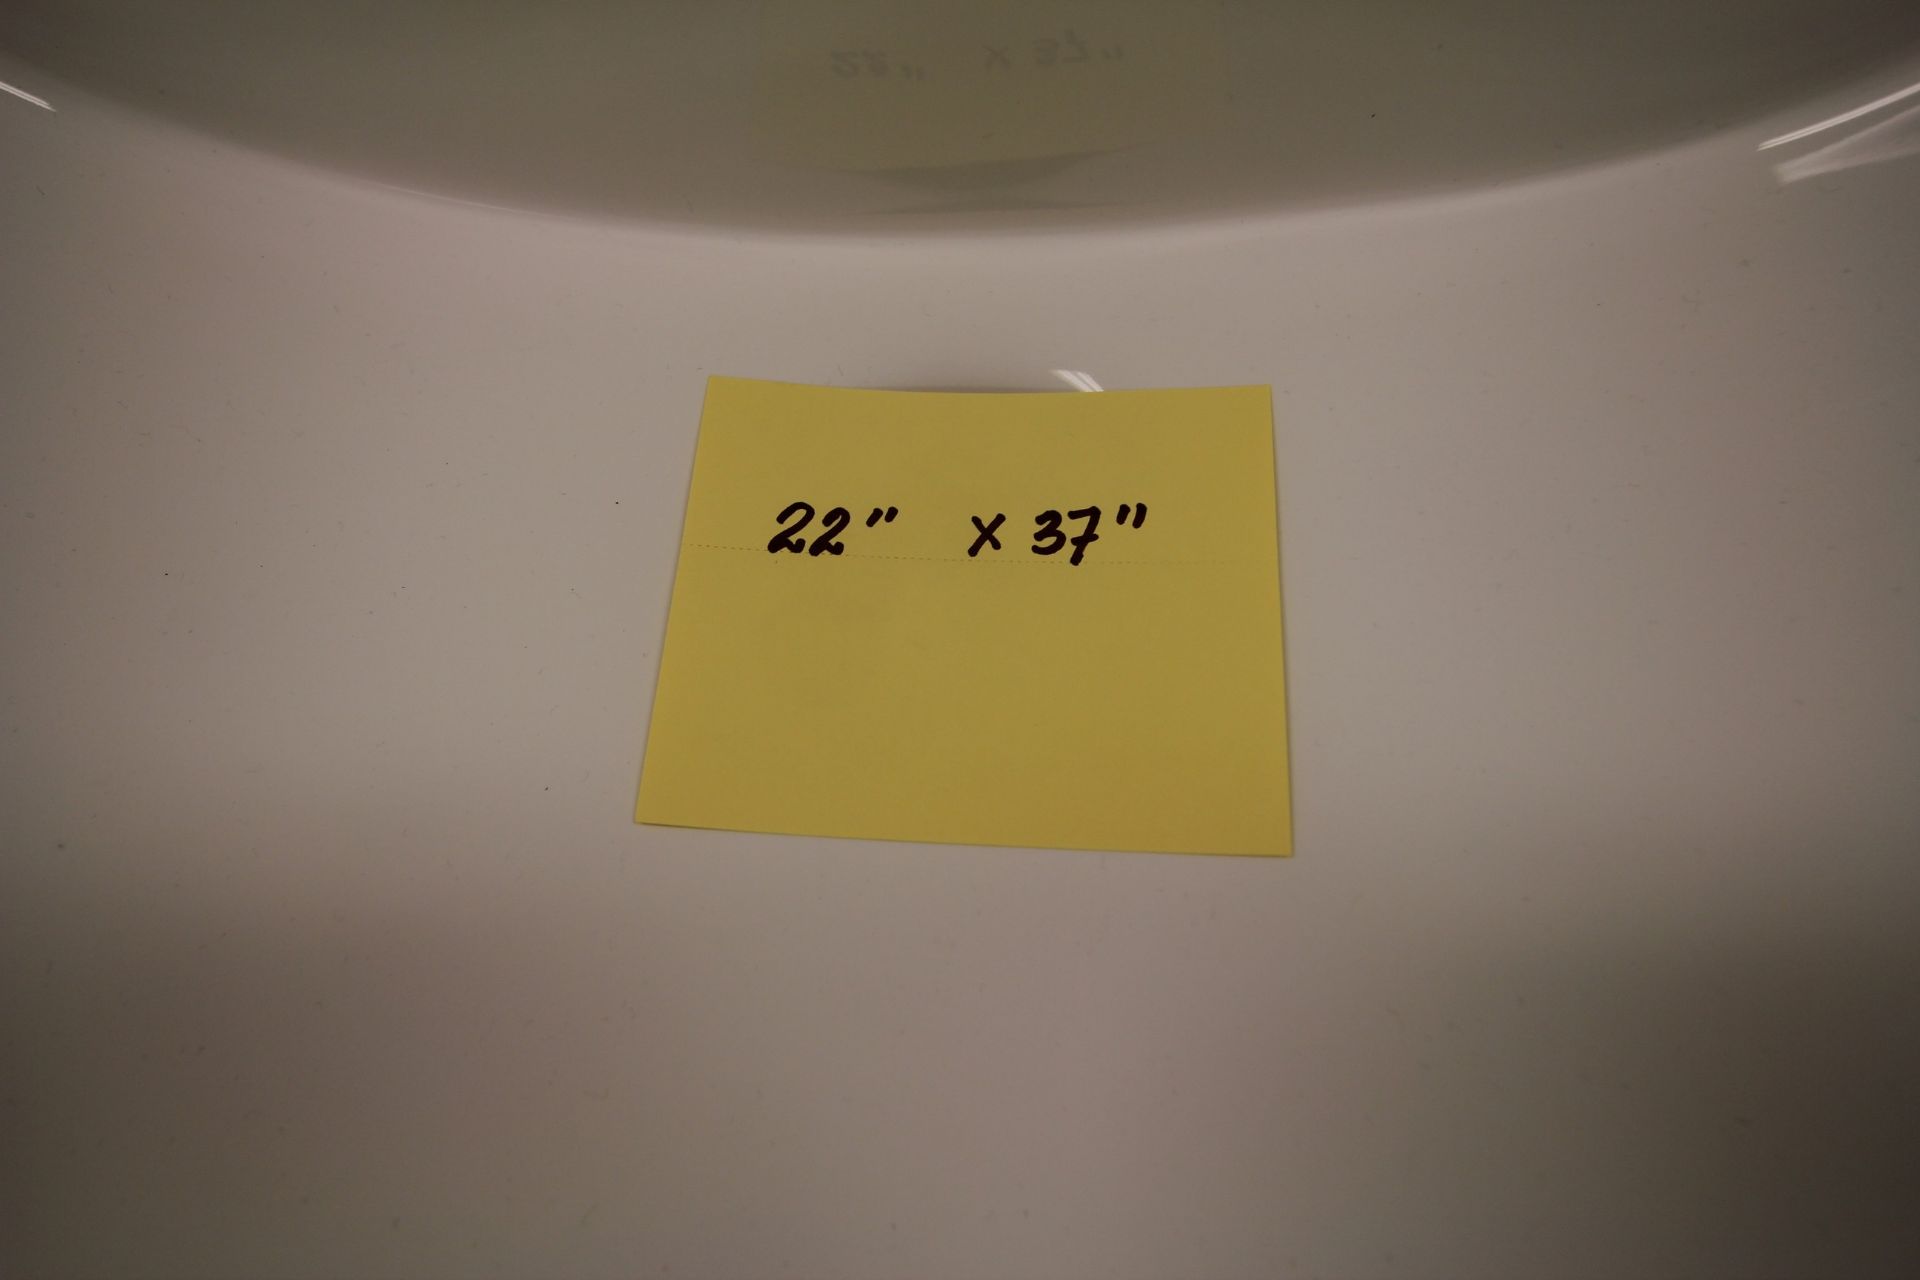 SHOWROOM DISPLAY BATHROOM VANITY W/ SINK, CUPBOARDS, 22" X 37" SINK - Image 2 of 2